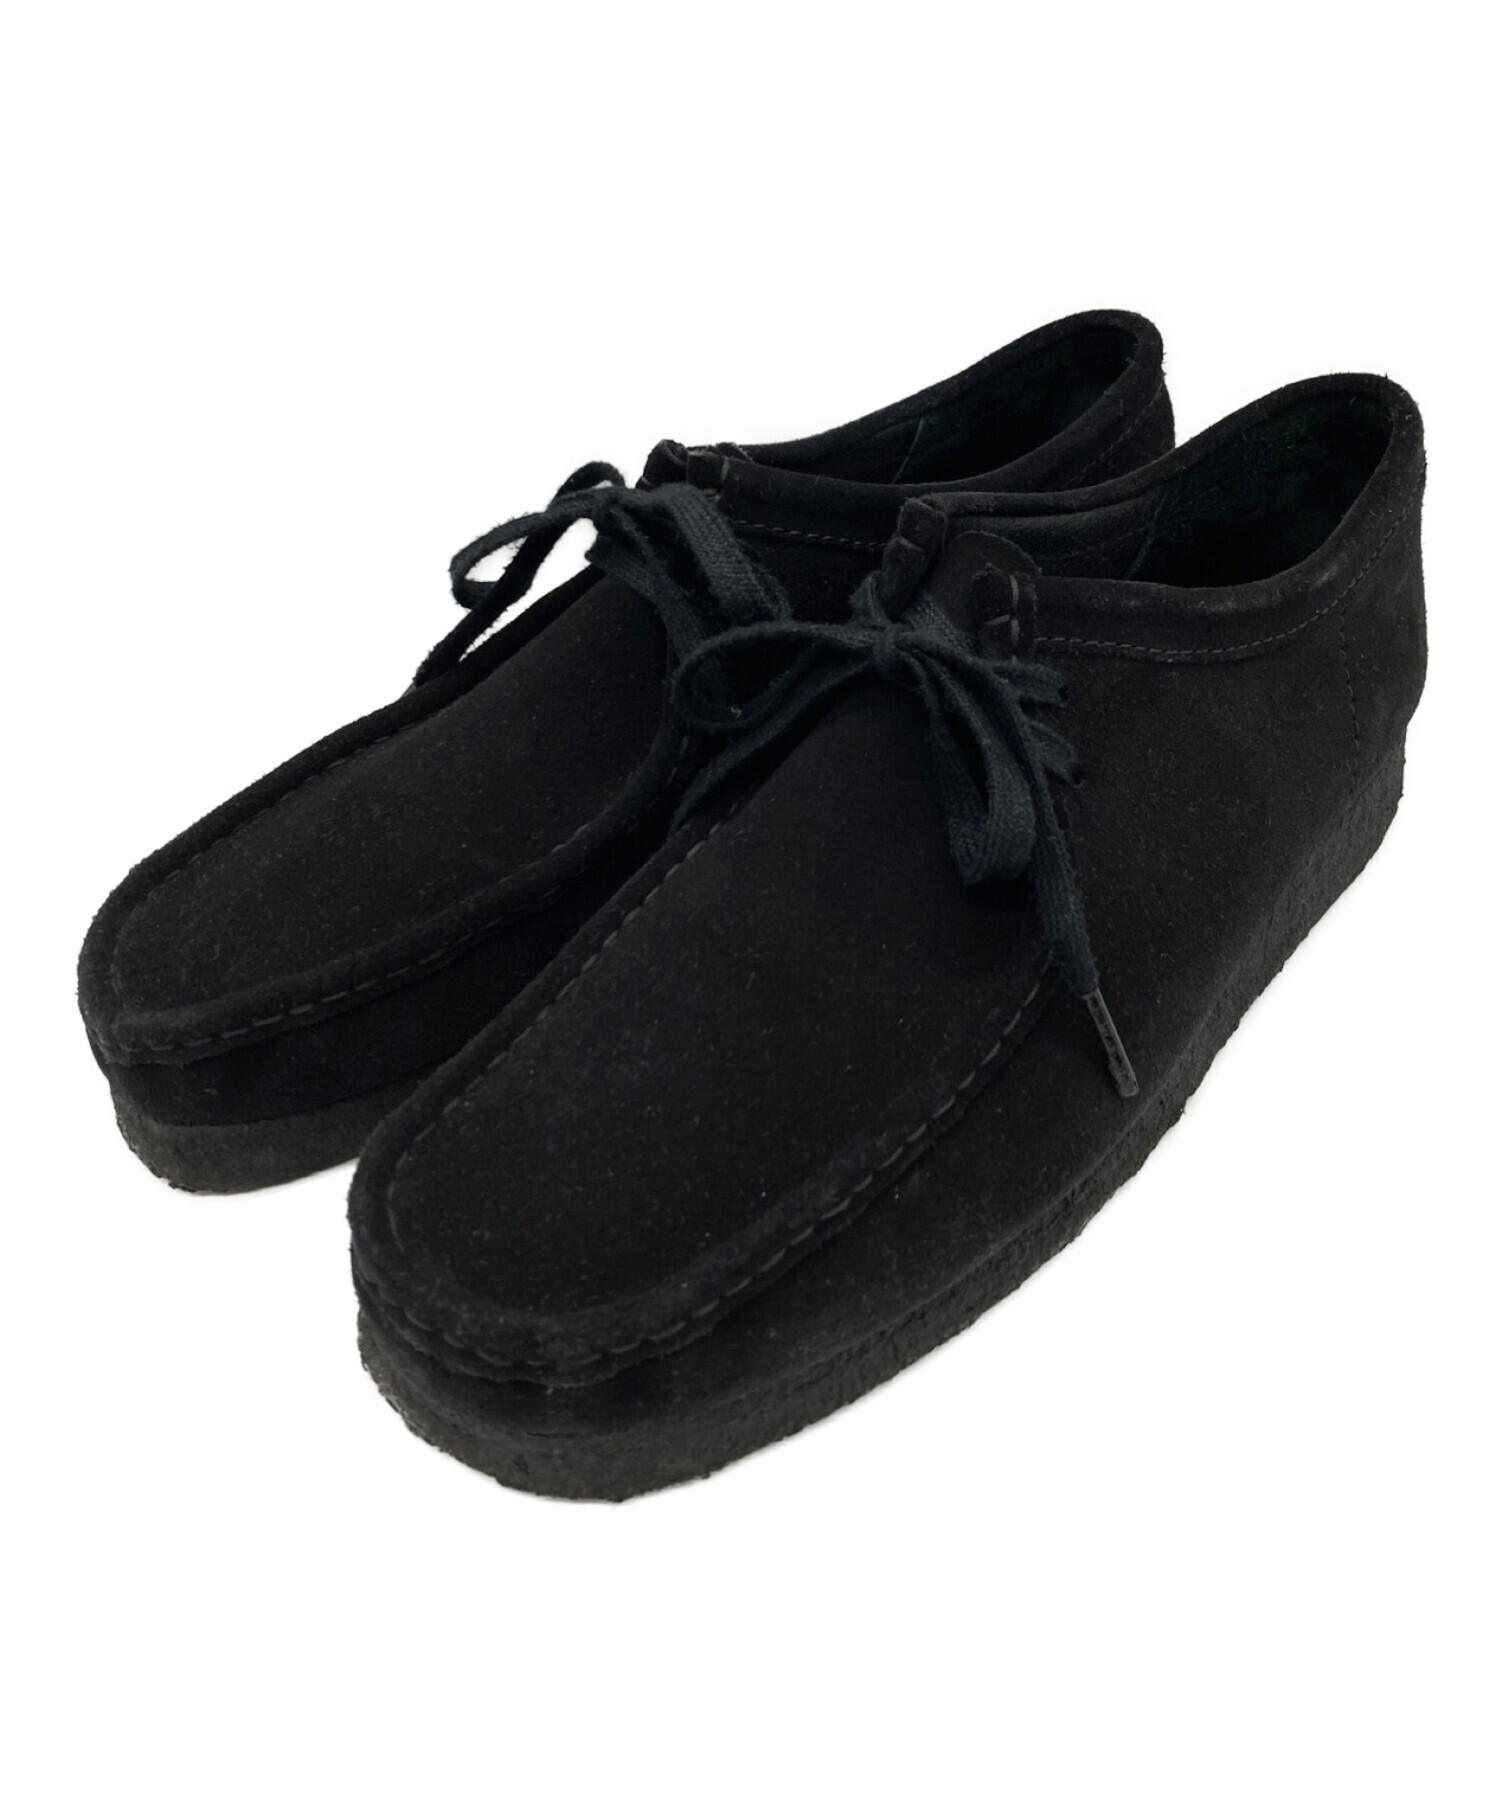 クラークス ワラビー ブラック 選択 - 靴